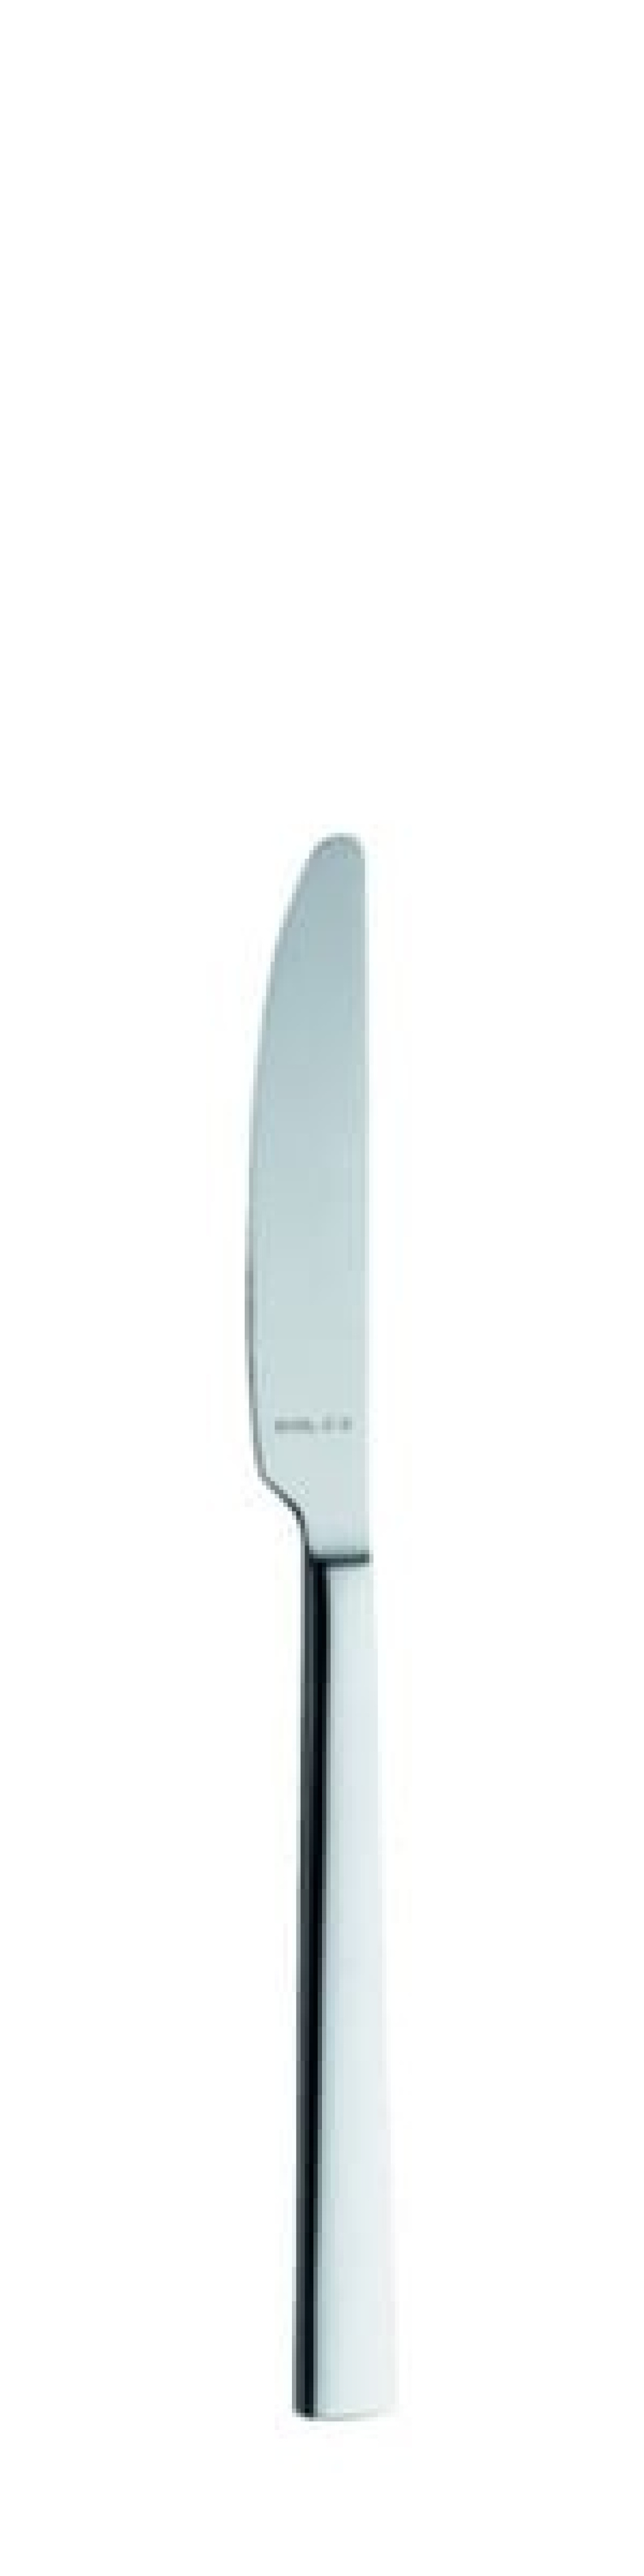 Nóż deserowy Helena 200 mm - Solex w grupie Nakrycie stołu / Sztućce / Noże w The Kitchen Lab (1284-21567)